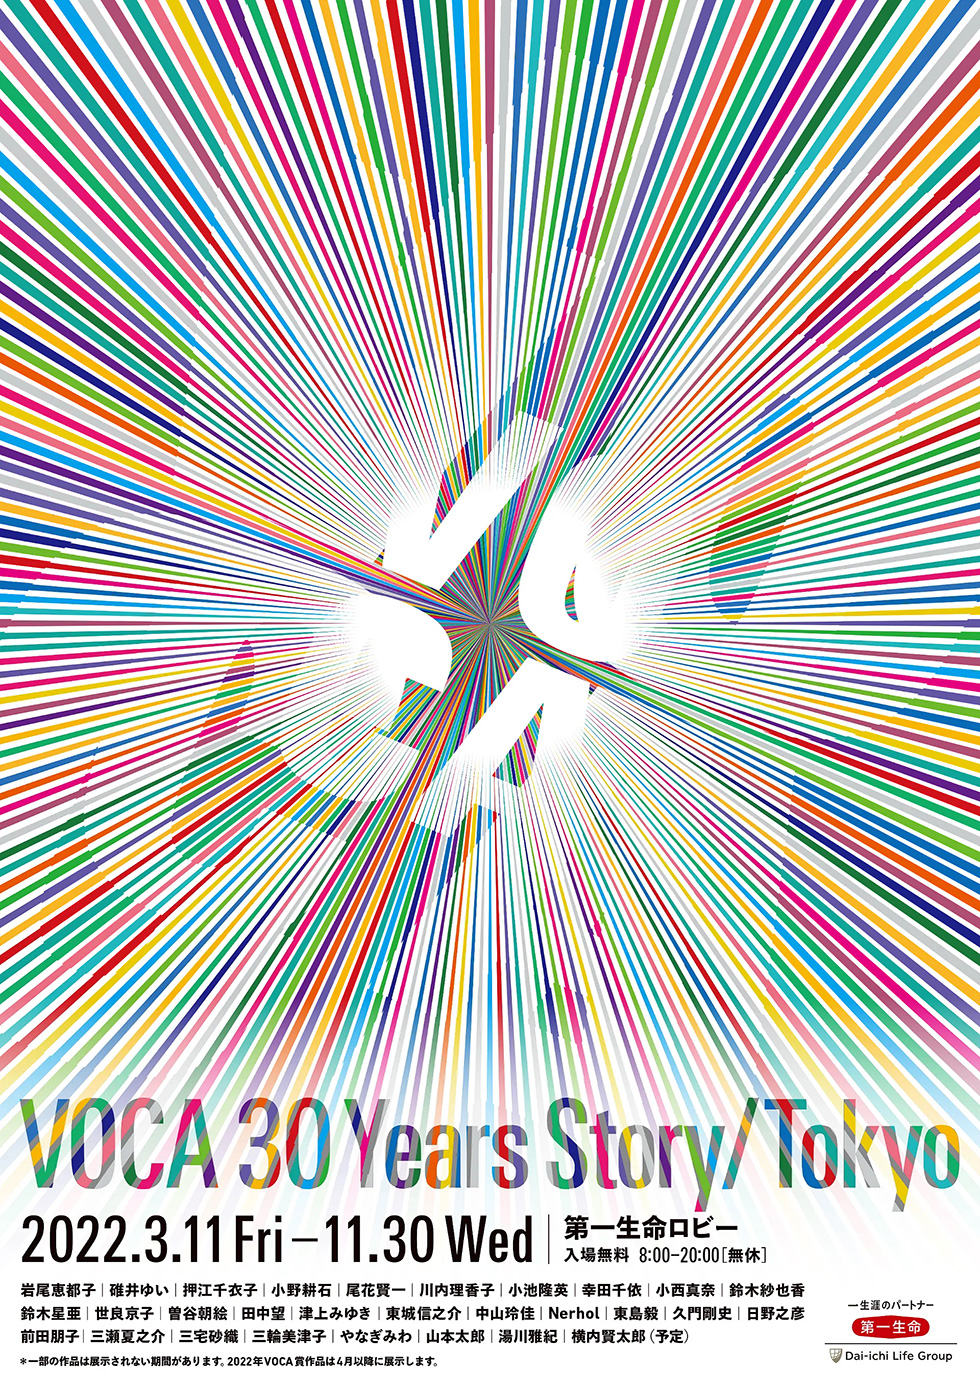 VOCA 30 Years Story / Tokyo